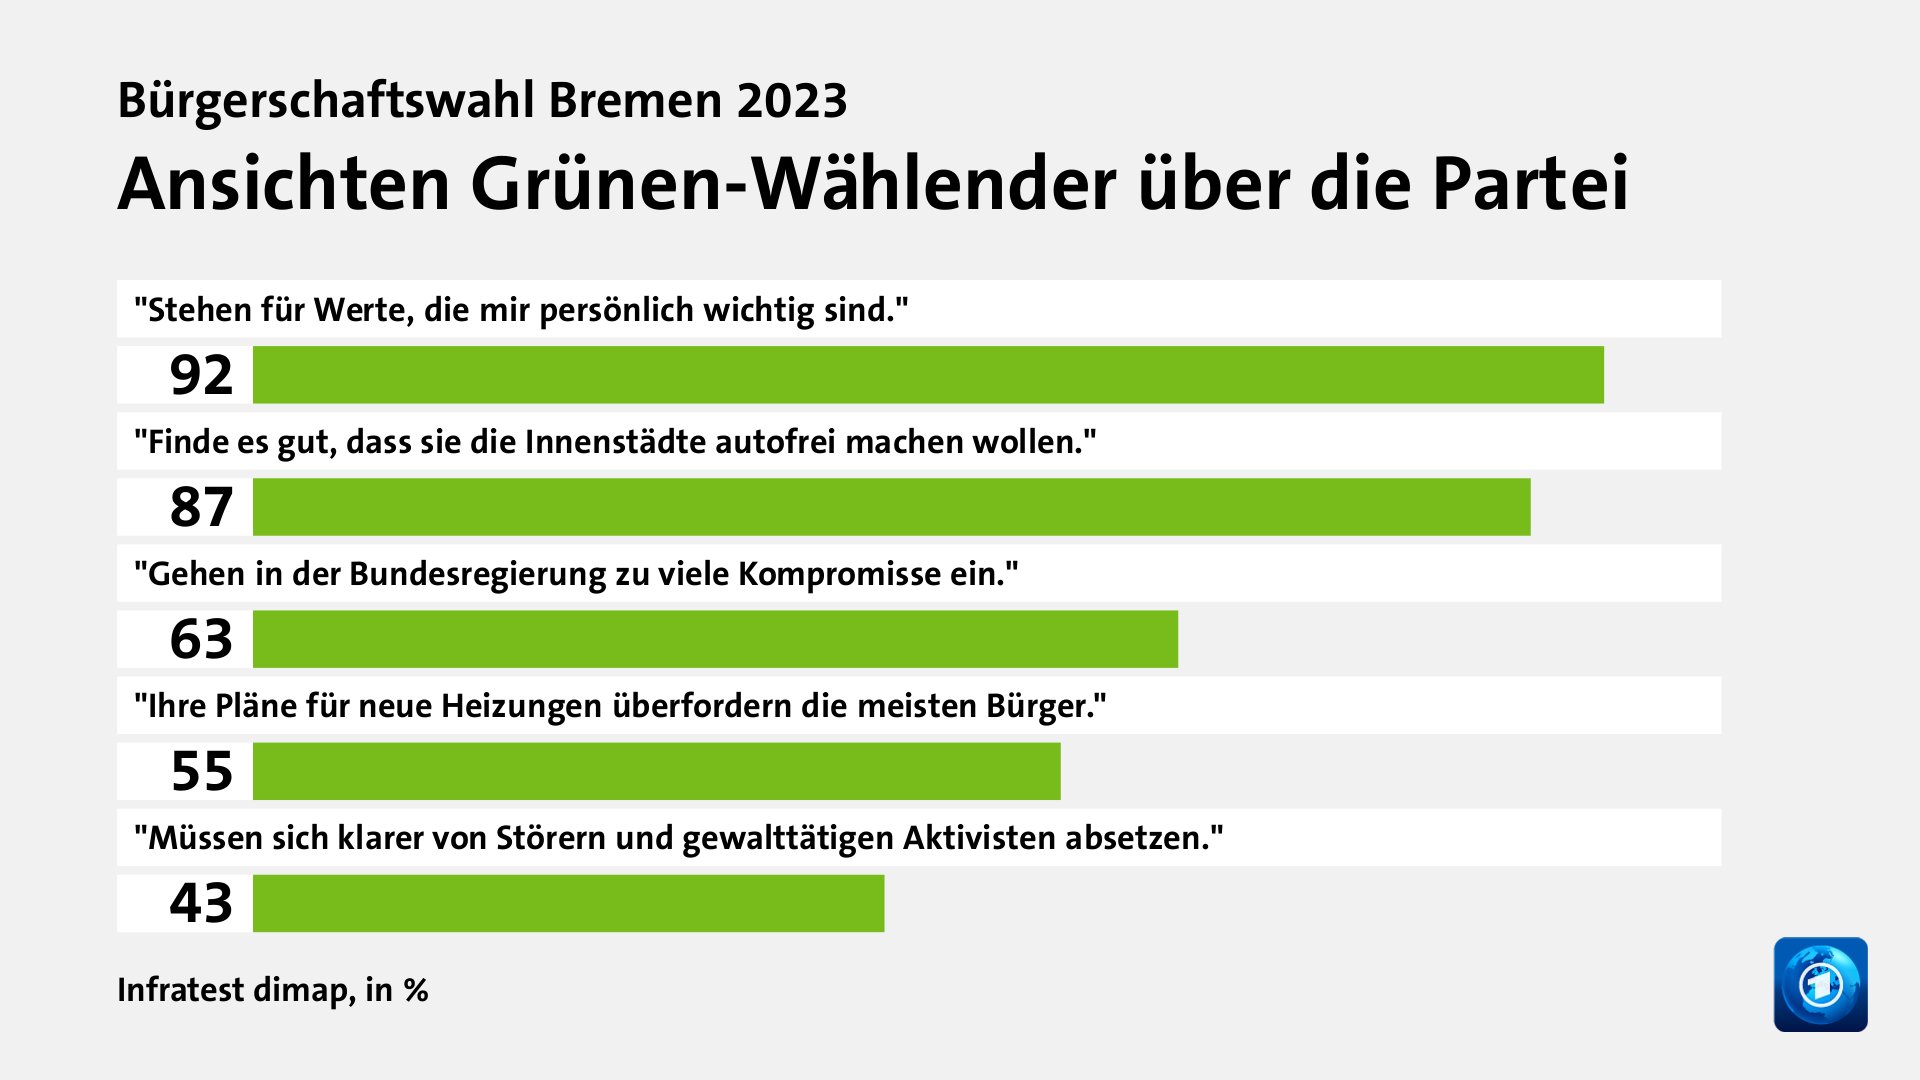 Ansichten Grünen-Wählender über die Partei, in %: 